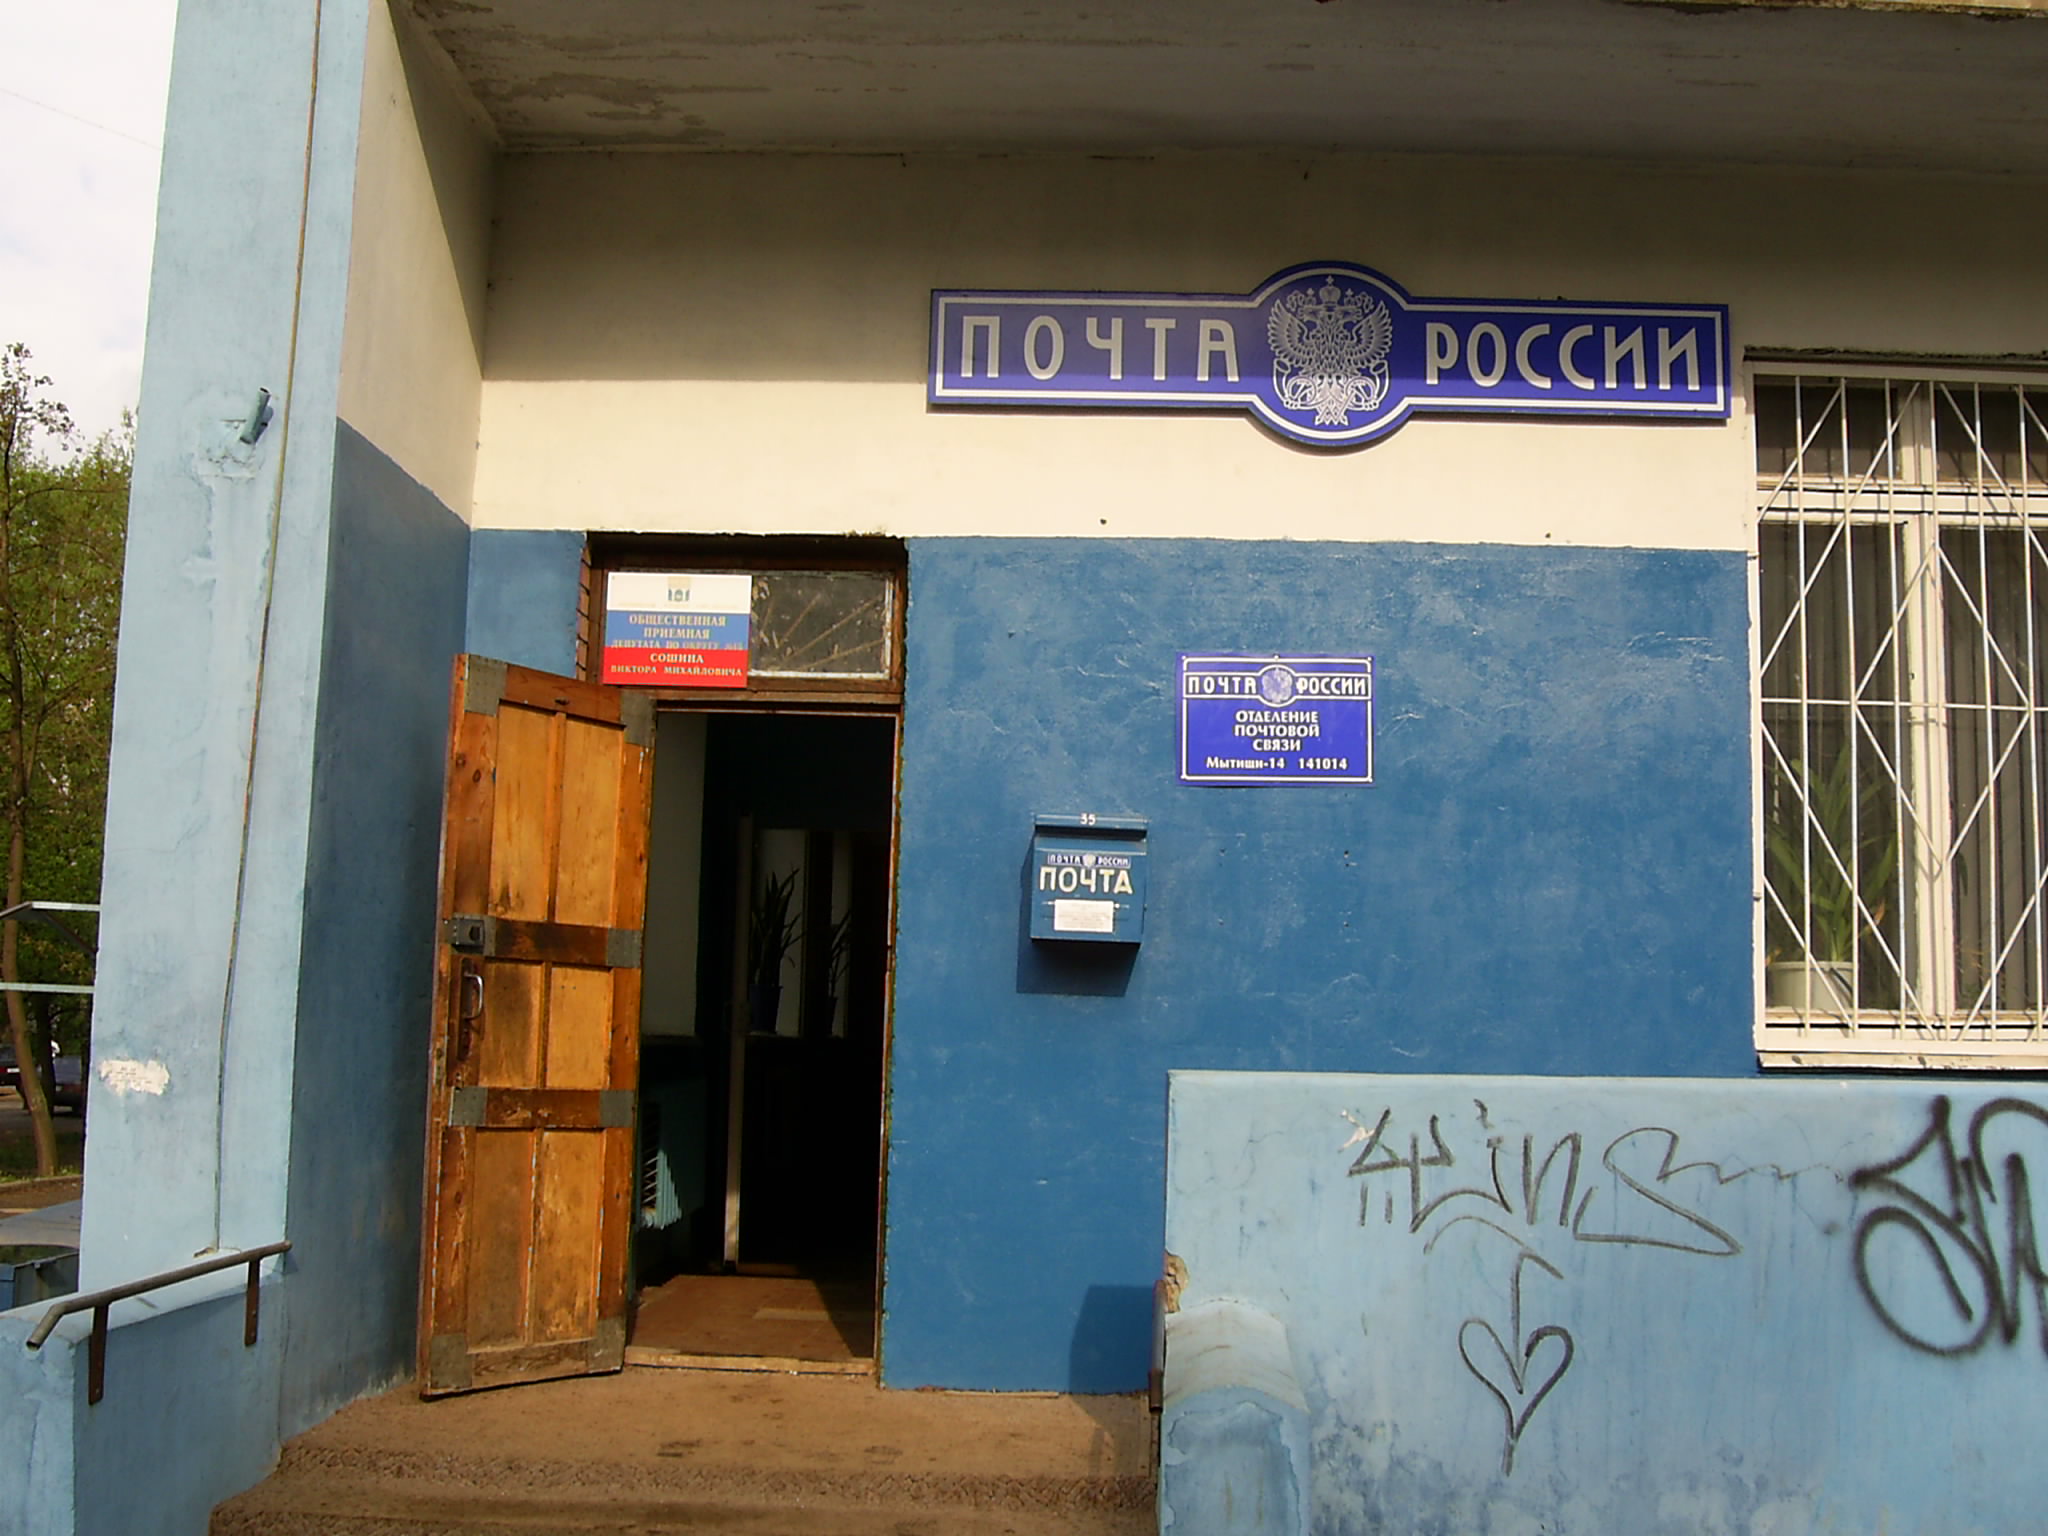 ФАСАД, отделение почтовой связи 141014, Московская обл., Мытищи